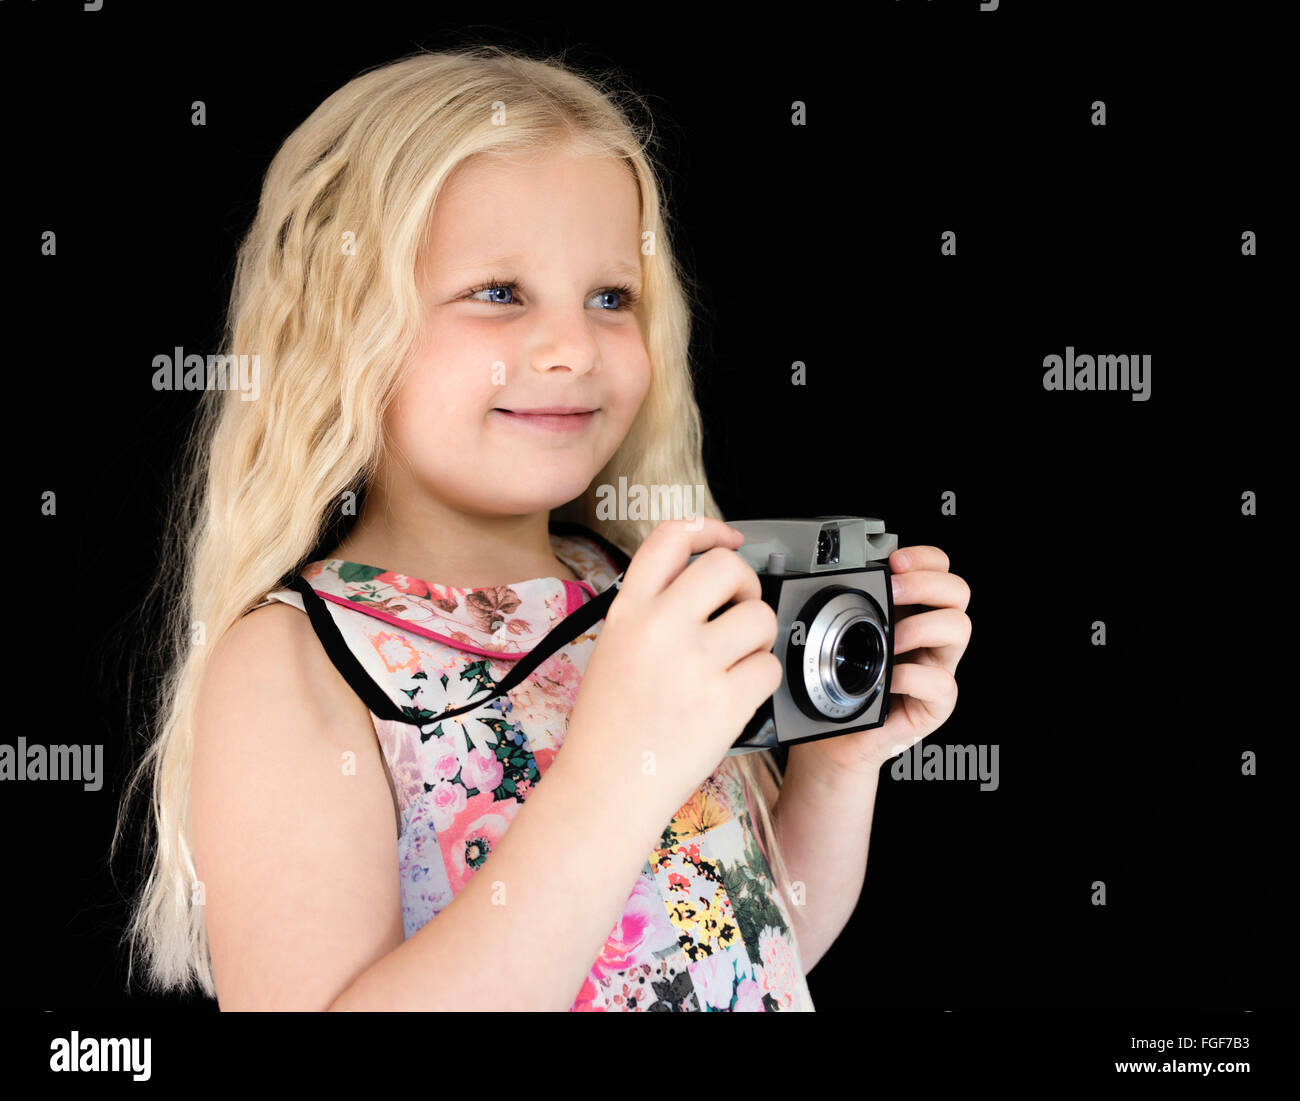 Joven con largo pelo rubio sosteniendo una cámara vintage sonriendo Foto de stock